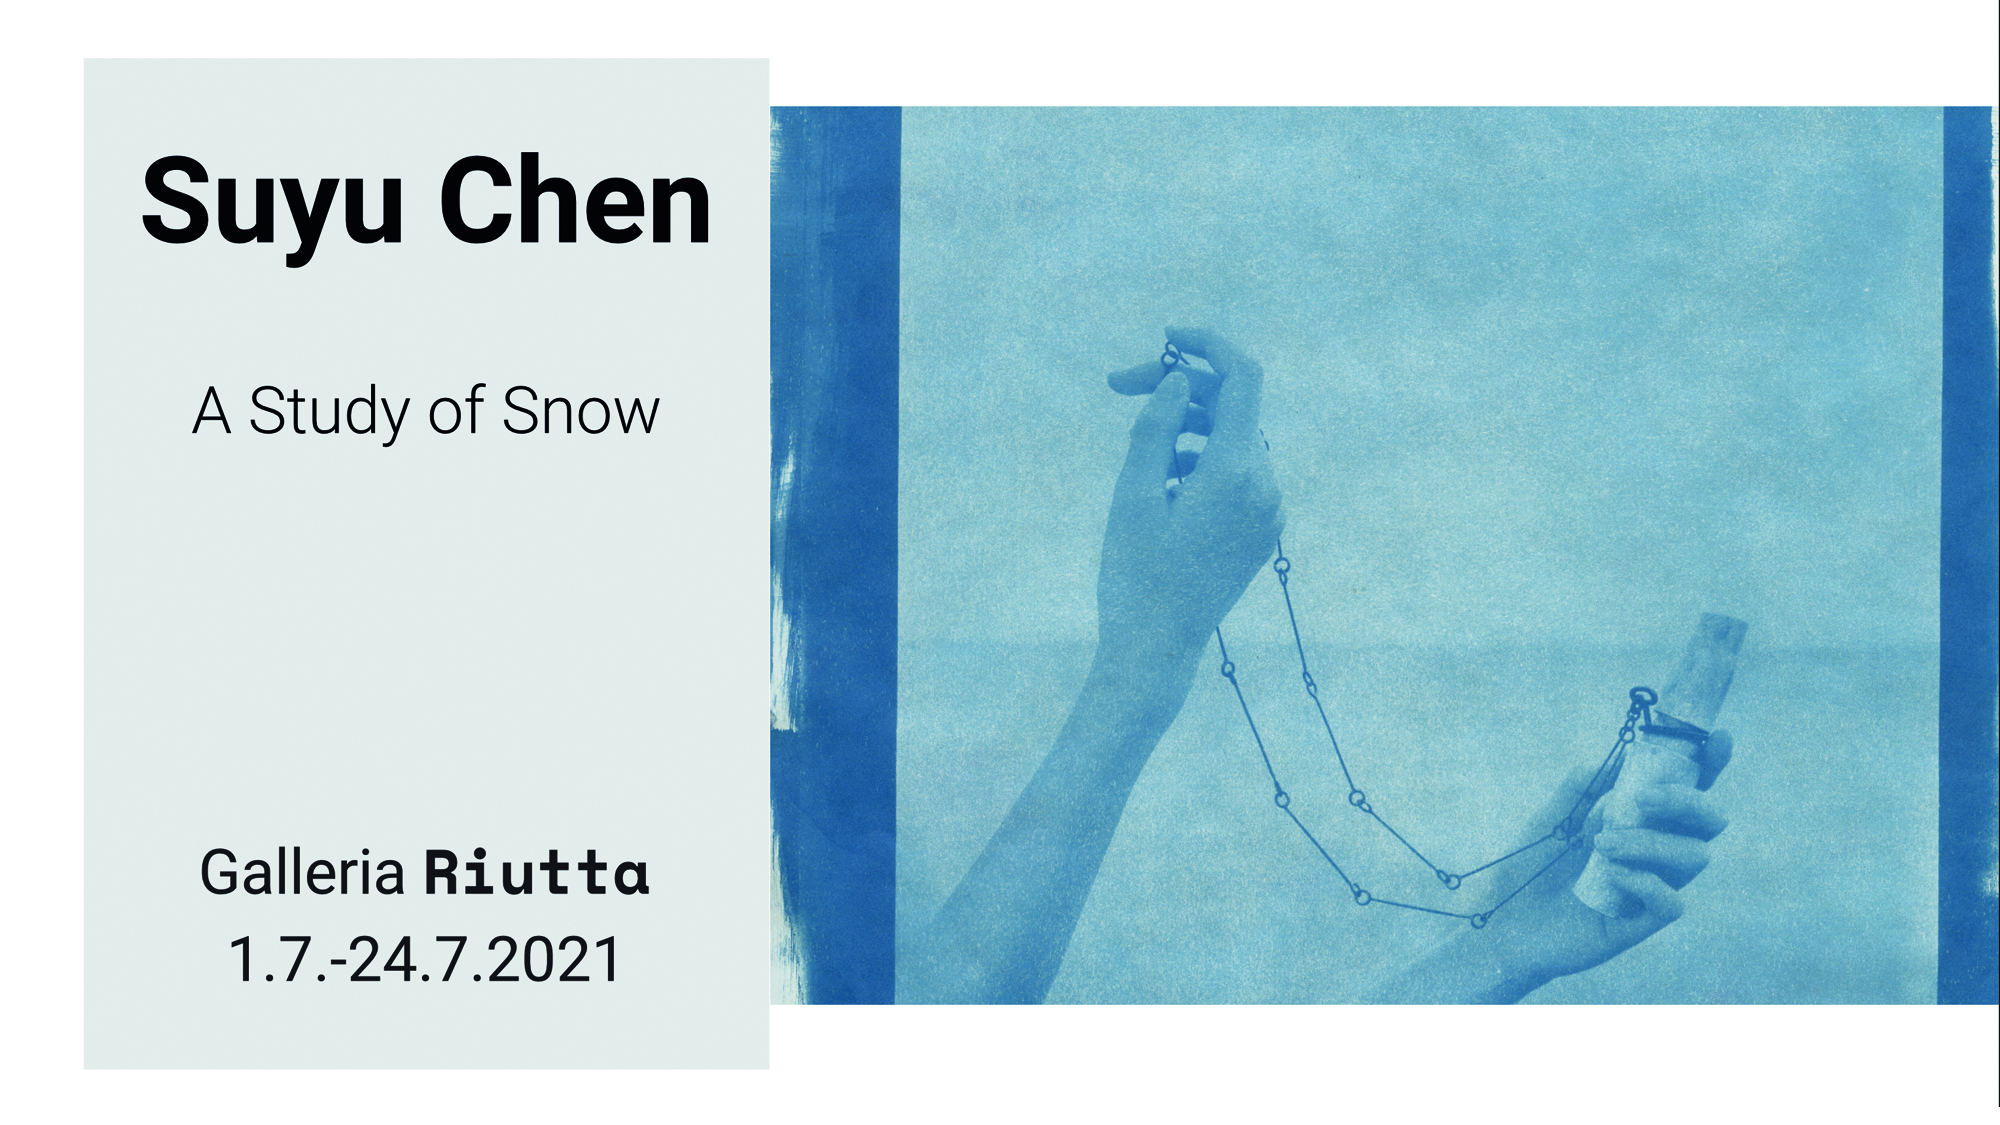 RIUTTA – Suyu Chen — a Study of Snow 1.7. -24.7.2021